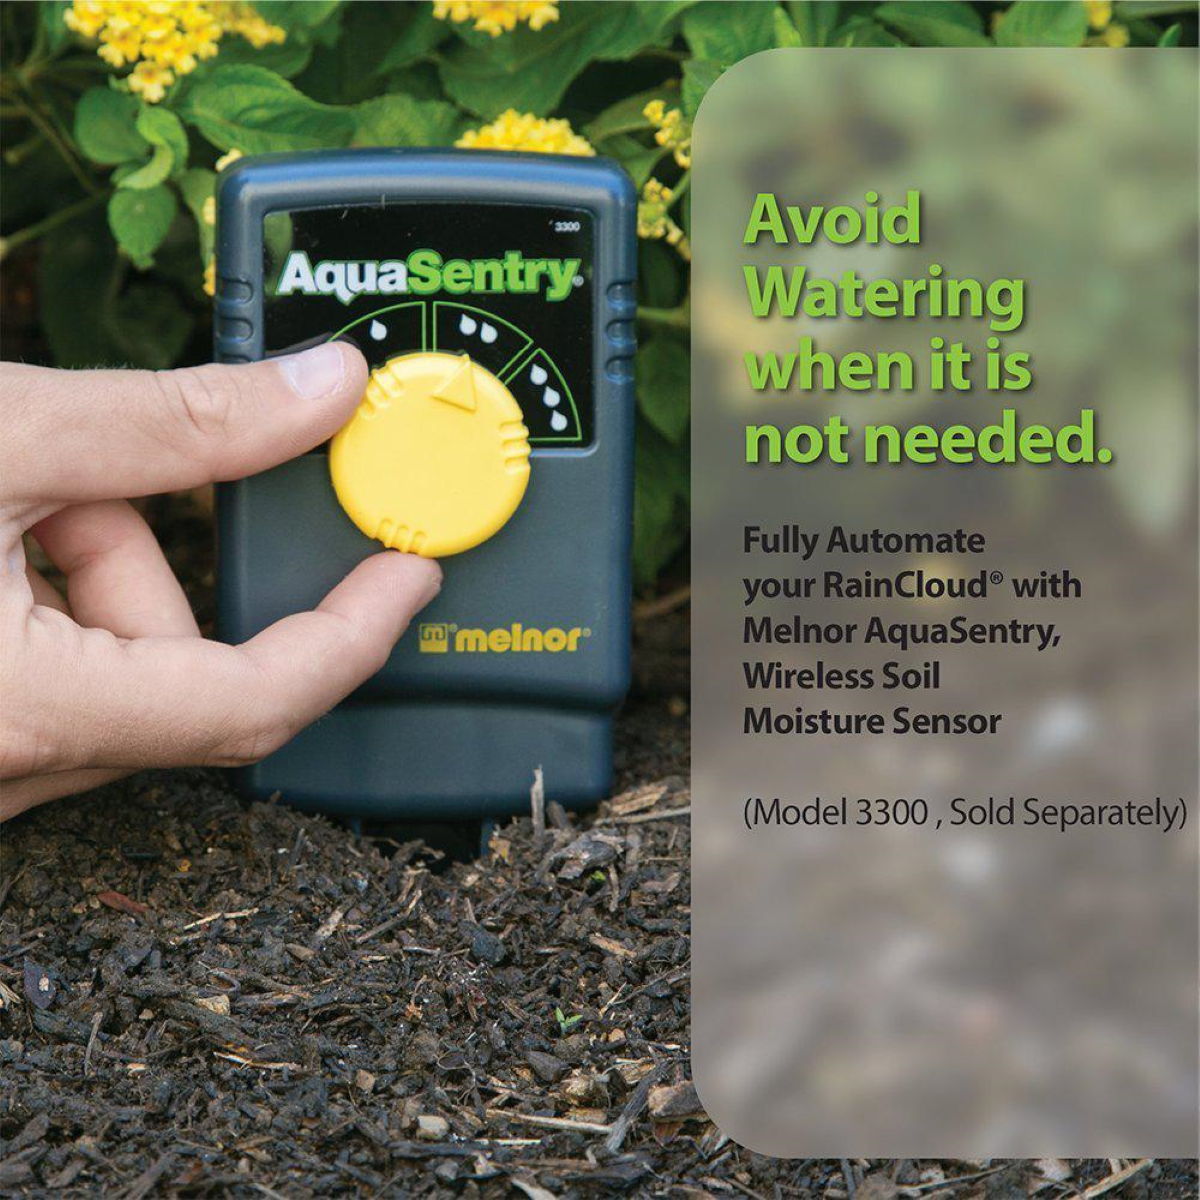 Melnor RainCloud Smart Water Timer - AquaSentry Wireless Soil Moisture Sensor